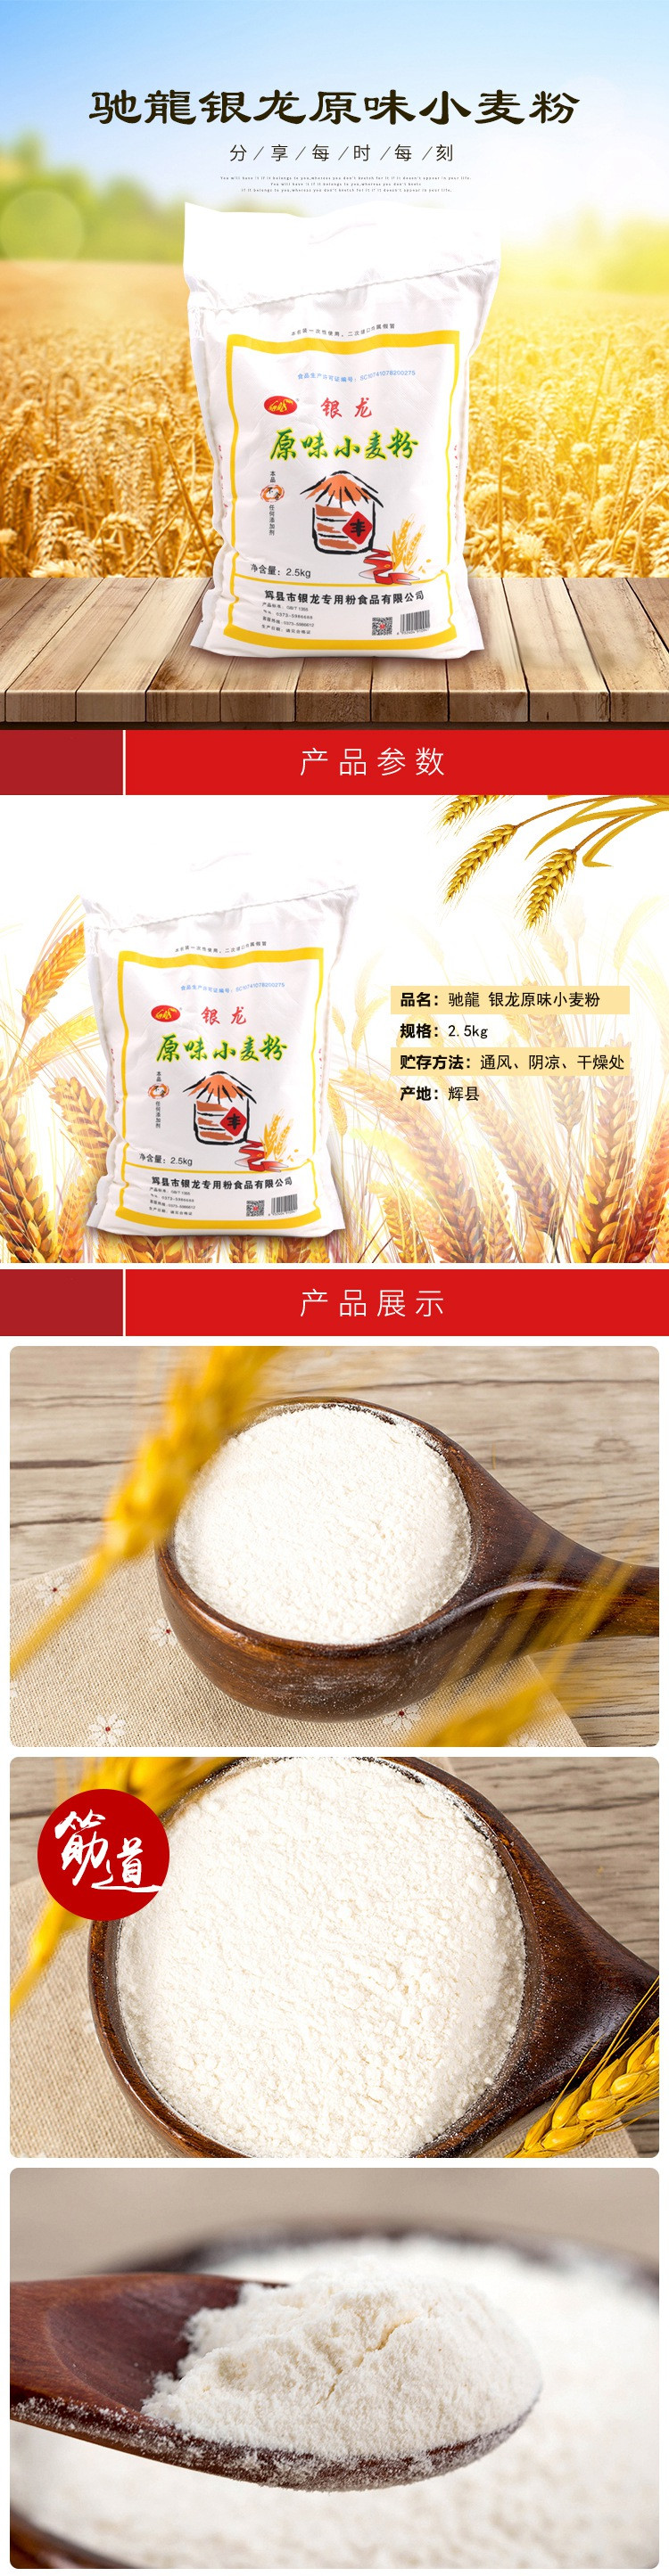 【消费扶贫】孟庄镇特产 驰龍 银龙原味小麦粉2.5kg 不含任何添加剂